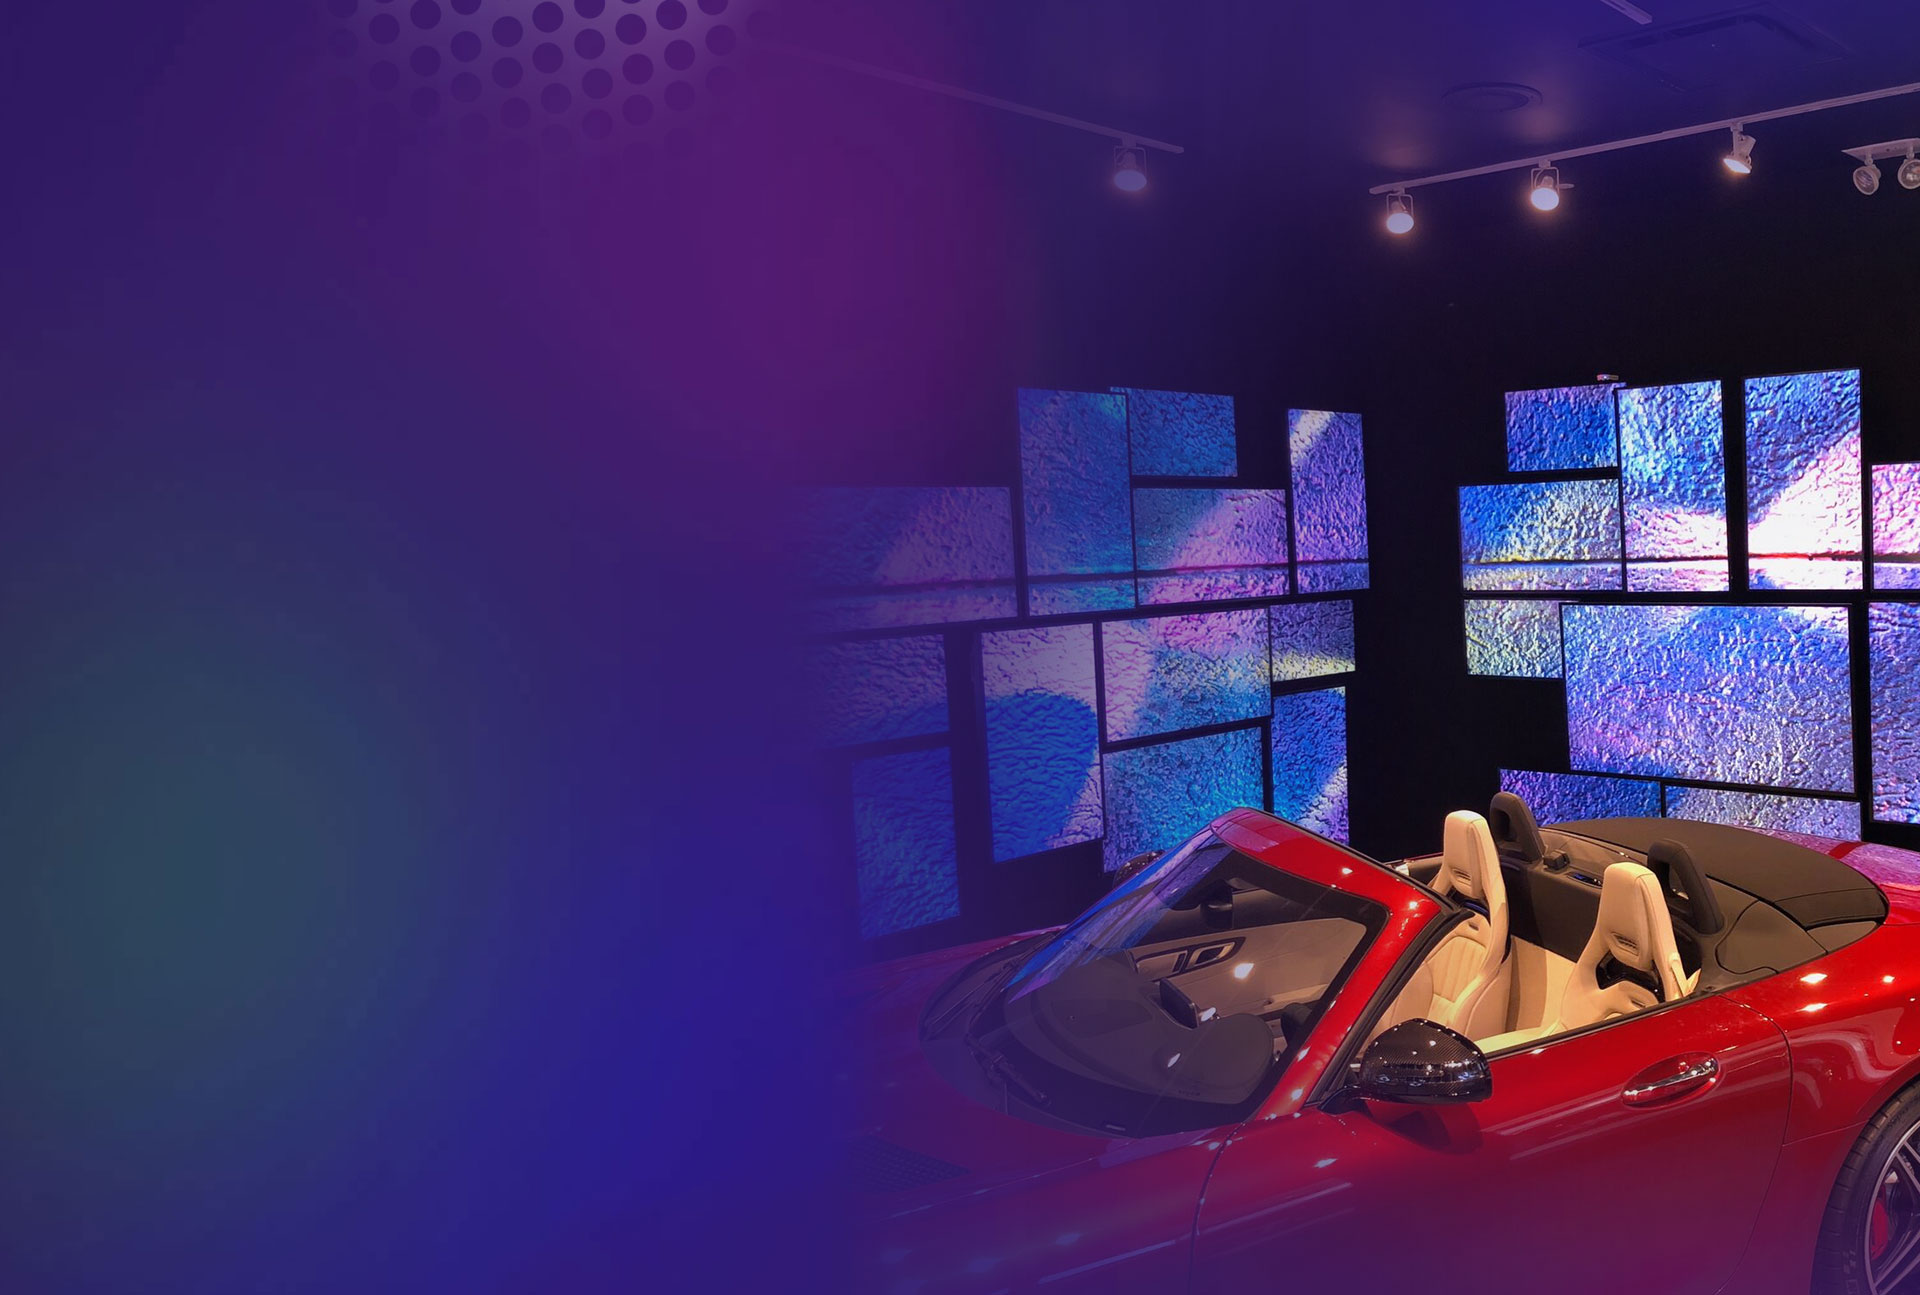 Meerdere BrightSign-gepaarde schermen met kleurrijke texturen naast rode cabrio